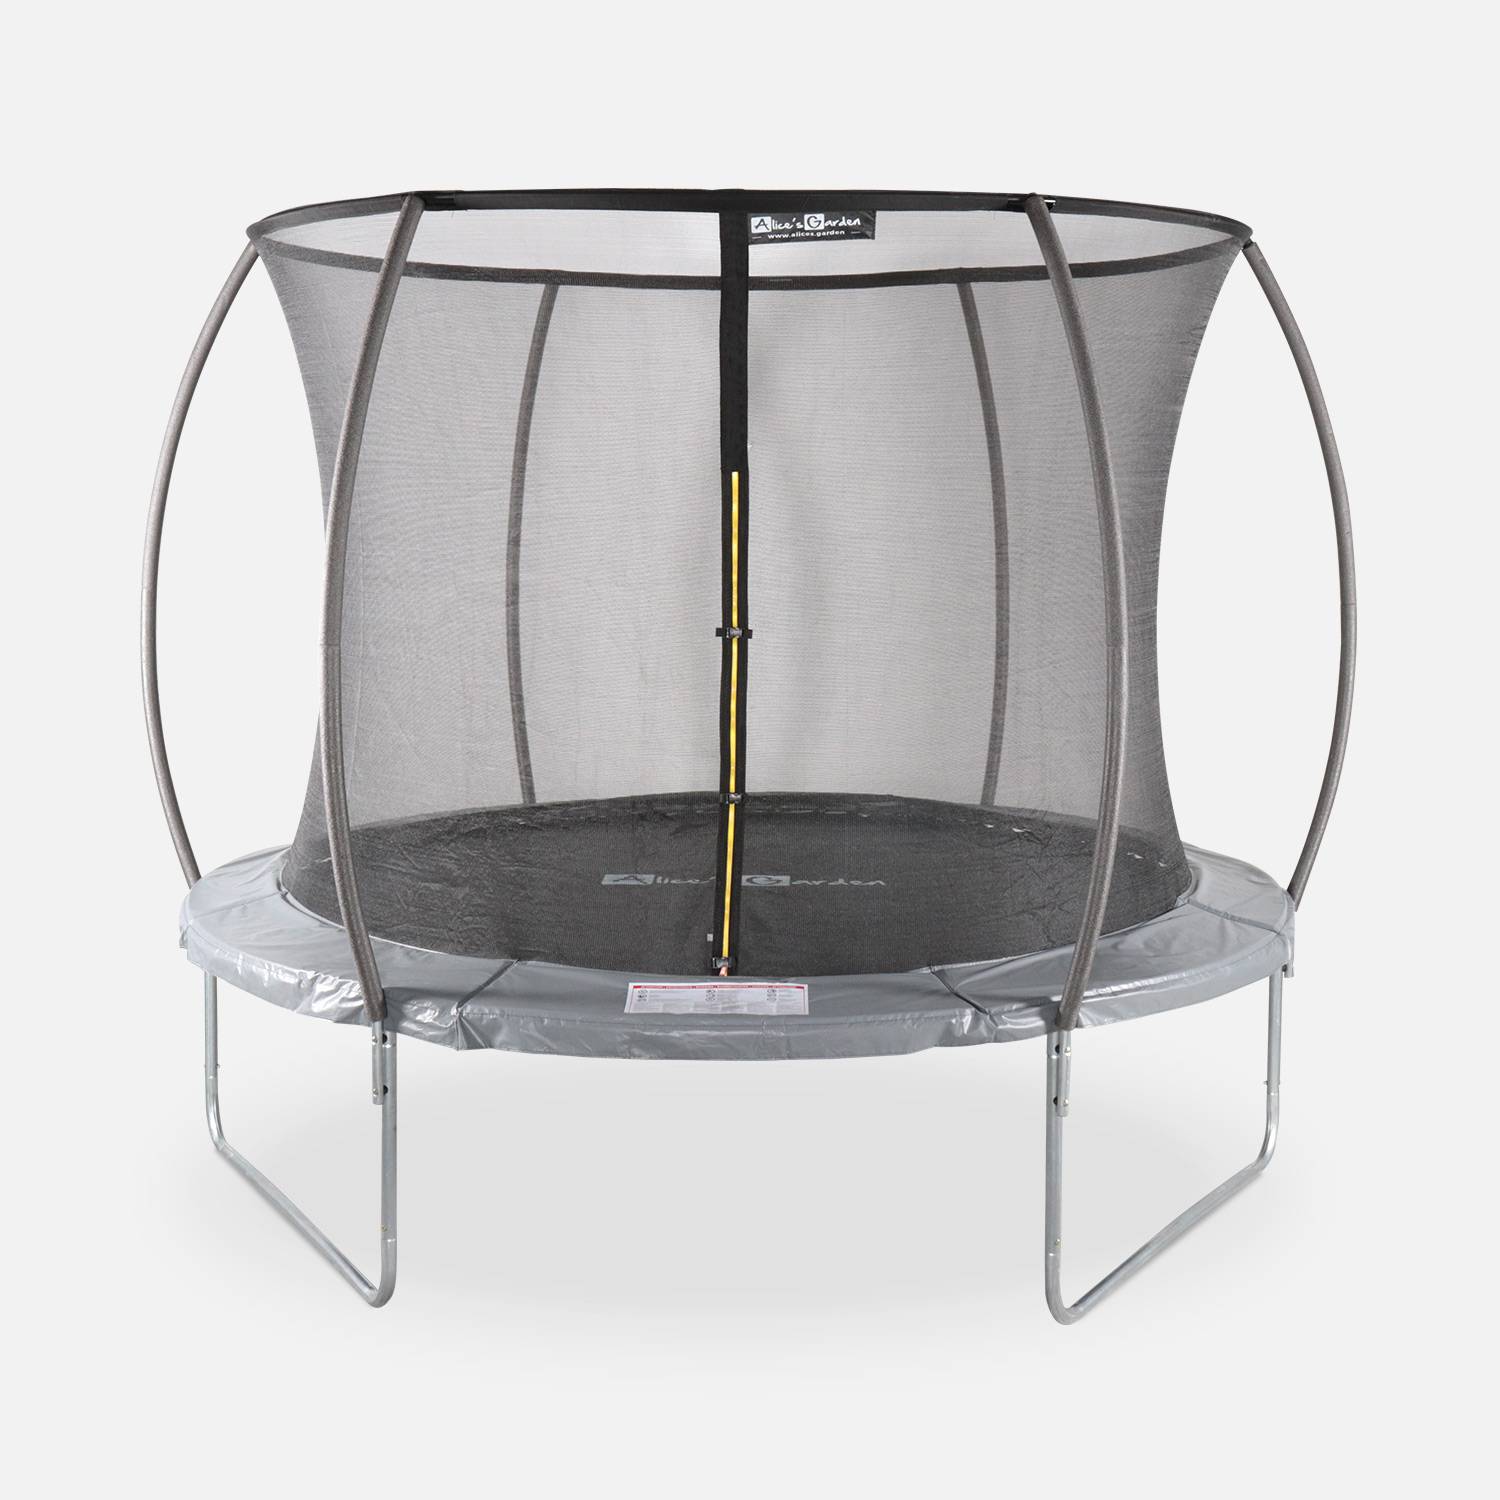 Trampoline rond Ø 305cm gris avec filet de protection intérieur - Mars Inner – Nouveau modèle - trampoline de jardin 3,05m 305 cm |Design | Qualité PRO | Normes EU Photo1